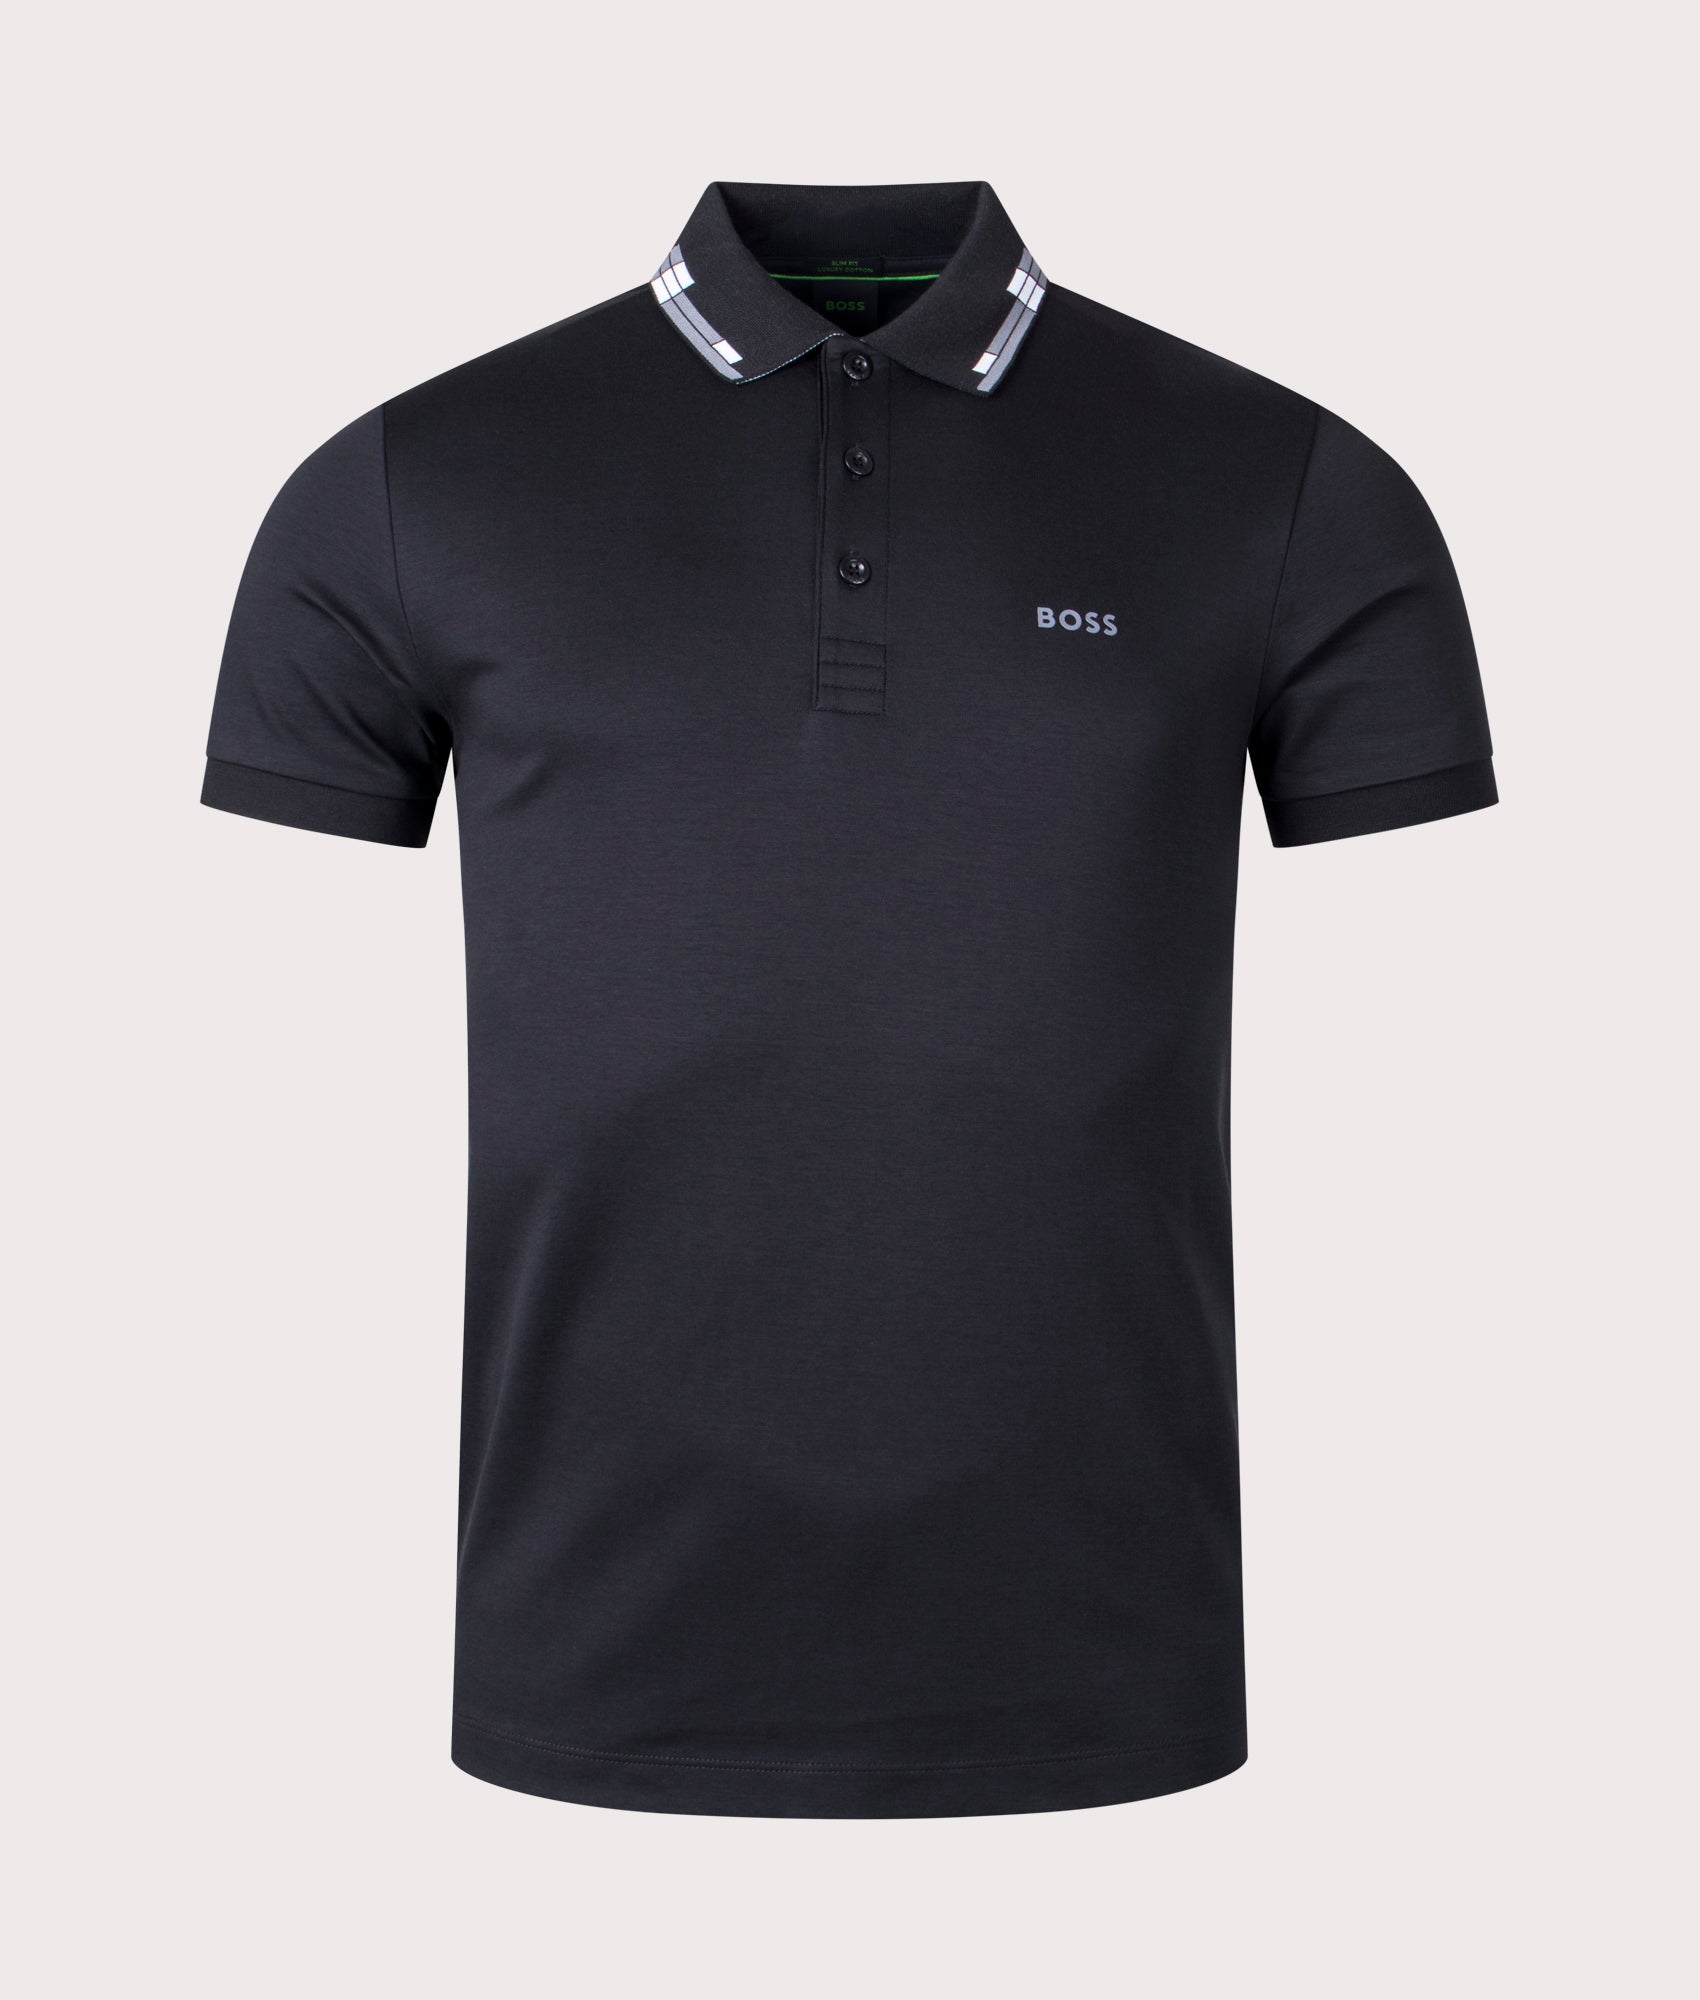 BOSS Mens Slim Fit Paule Polo Shirt - Colour: 001 Black - Size: Large